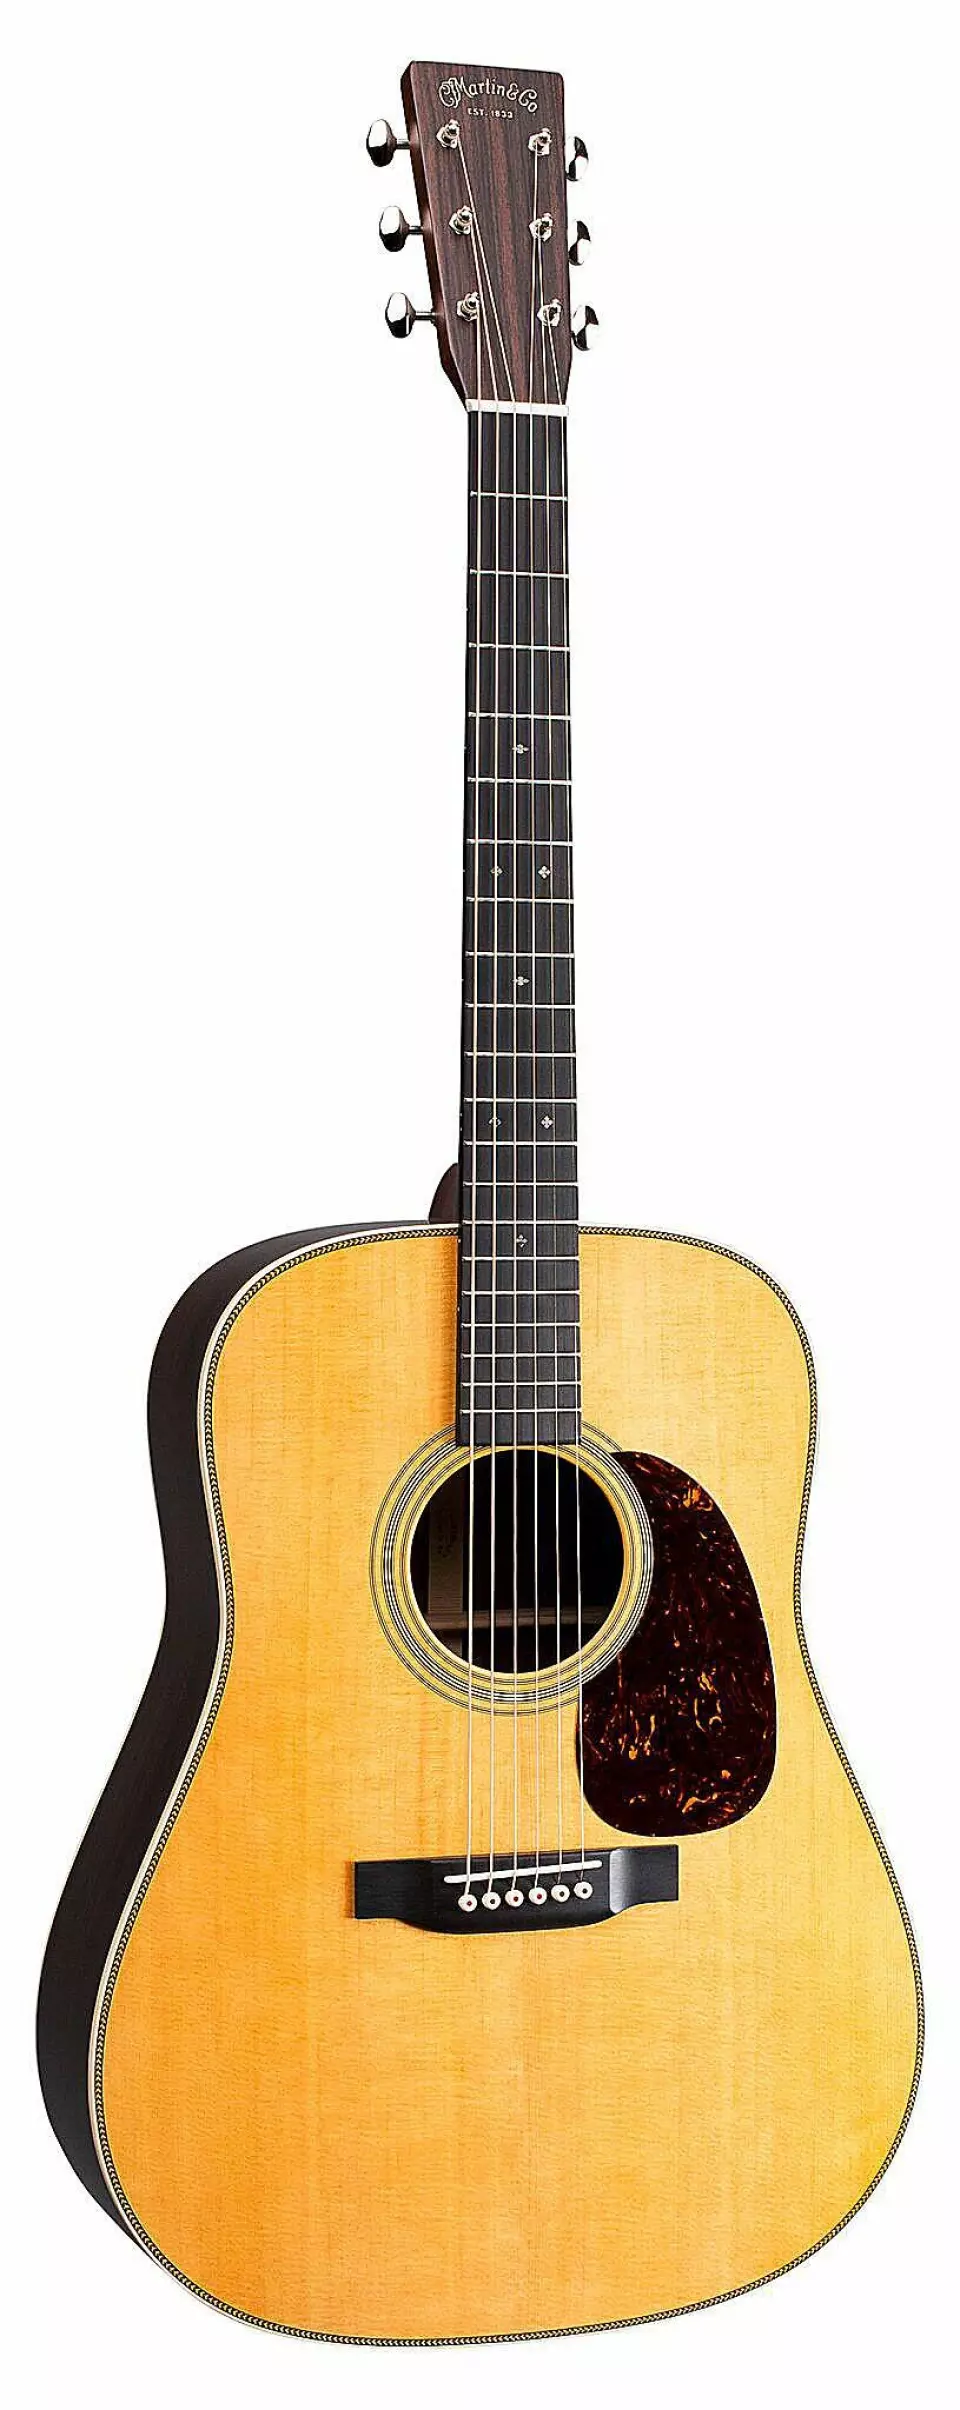 Martin HD-28 er en annen klassisk gitarmodell fra Martin & Co. Pris: 35.000,- Foto: Martin & Co.